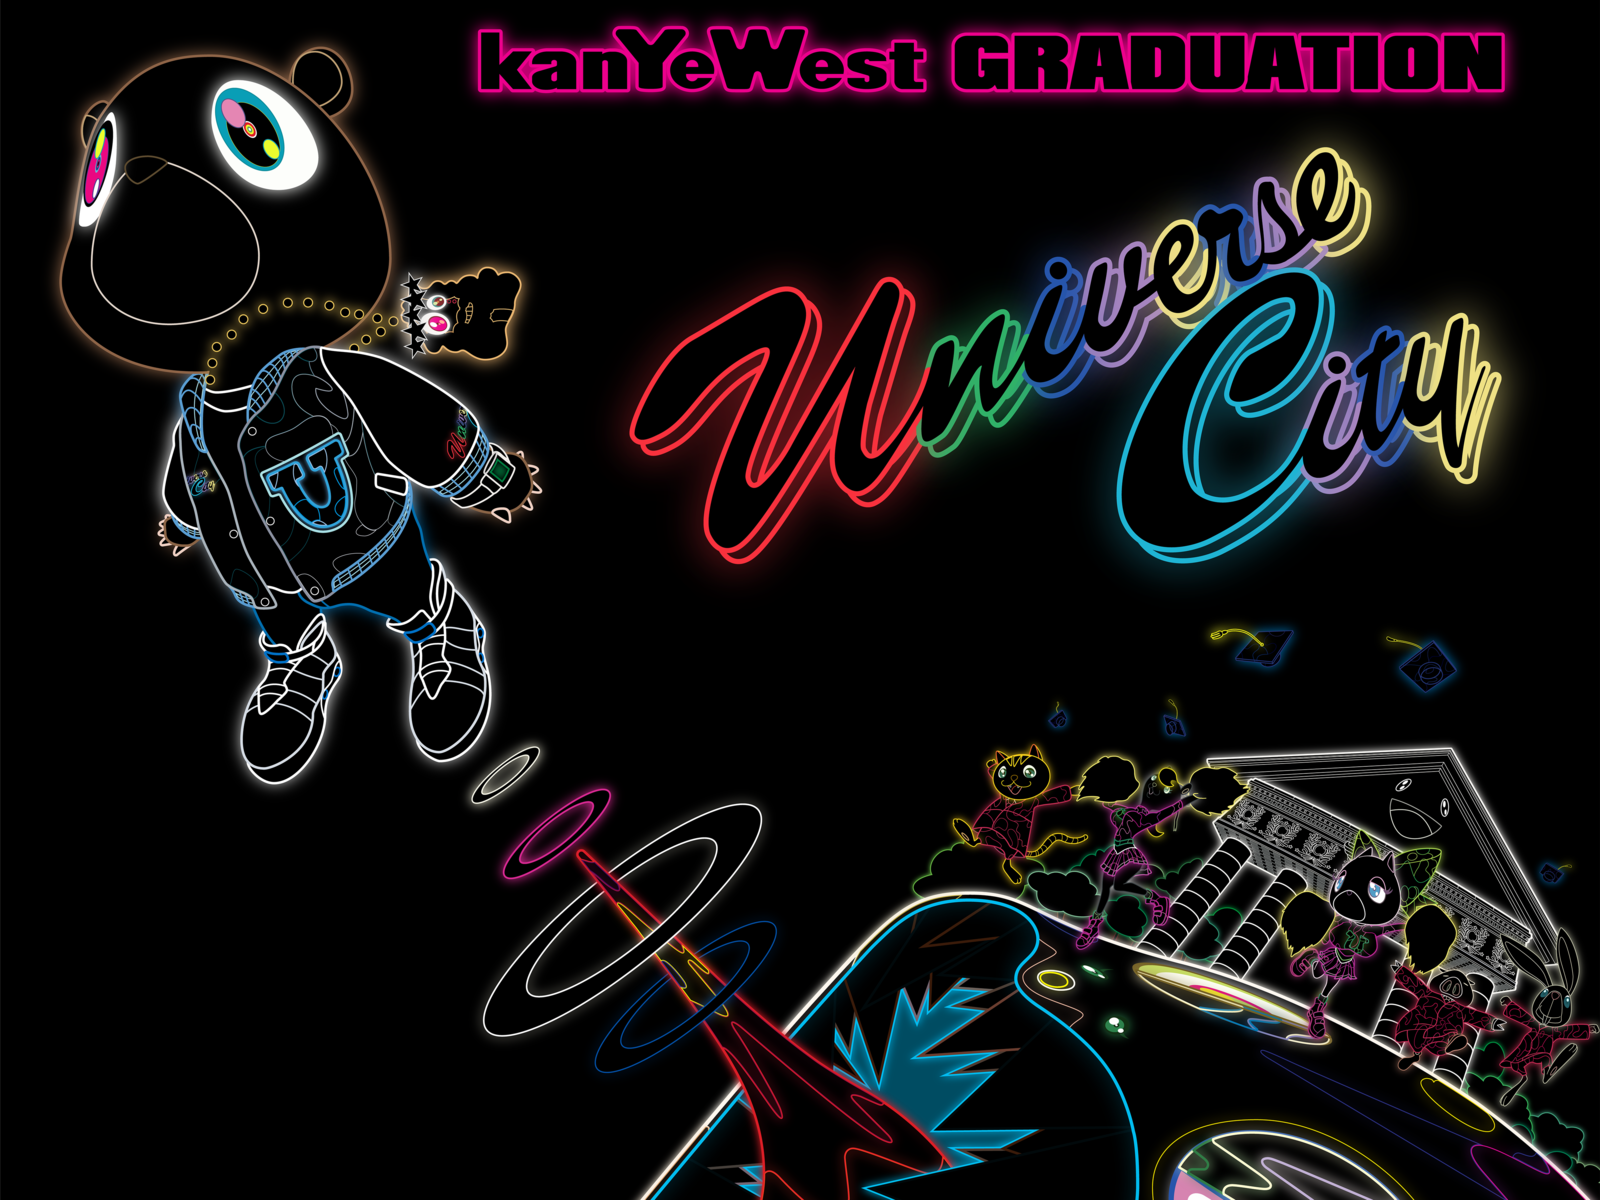 Neon Vector/Remastered Takashi Murakami Graduation Art by Josh